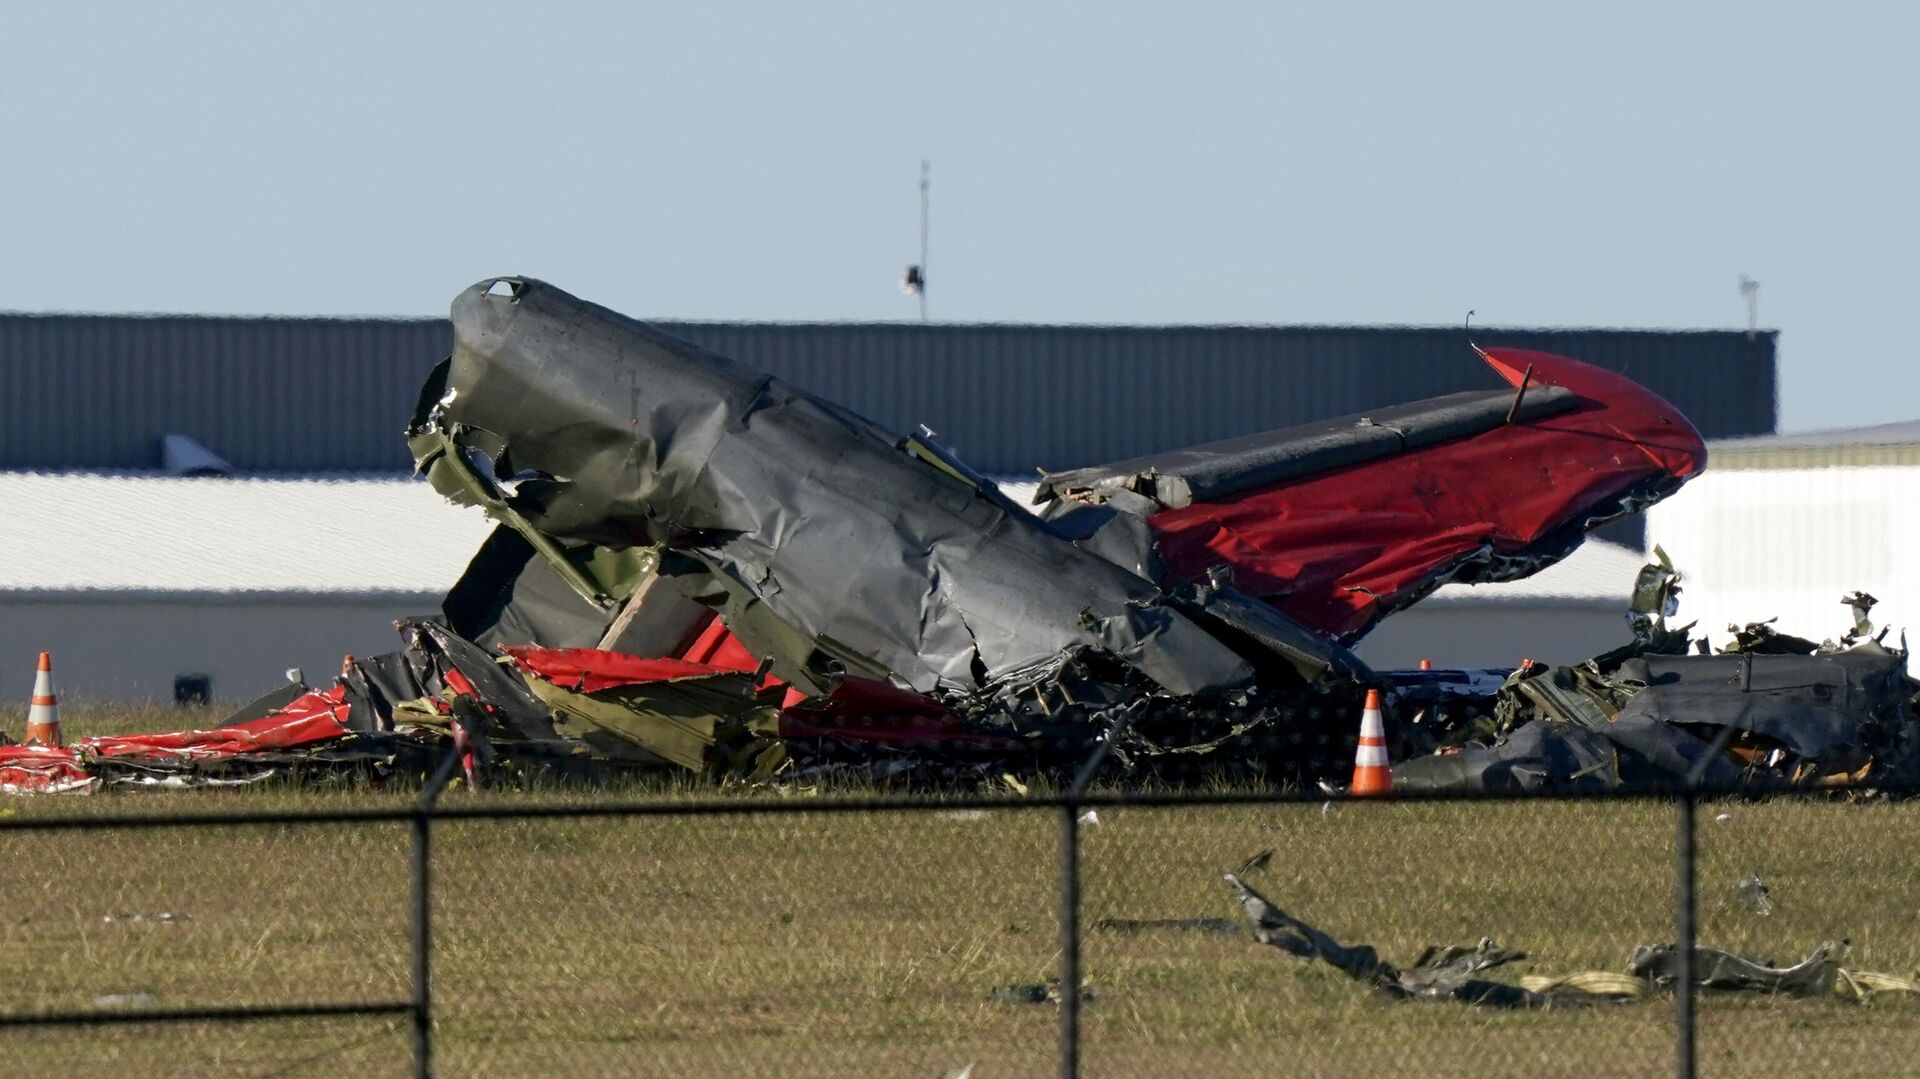 Один человек погиб, 1 пострадал при столкновении 2 самолетов на авиашоу в Португалии